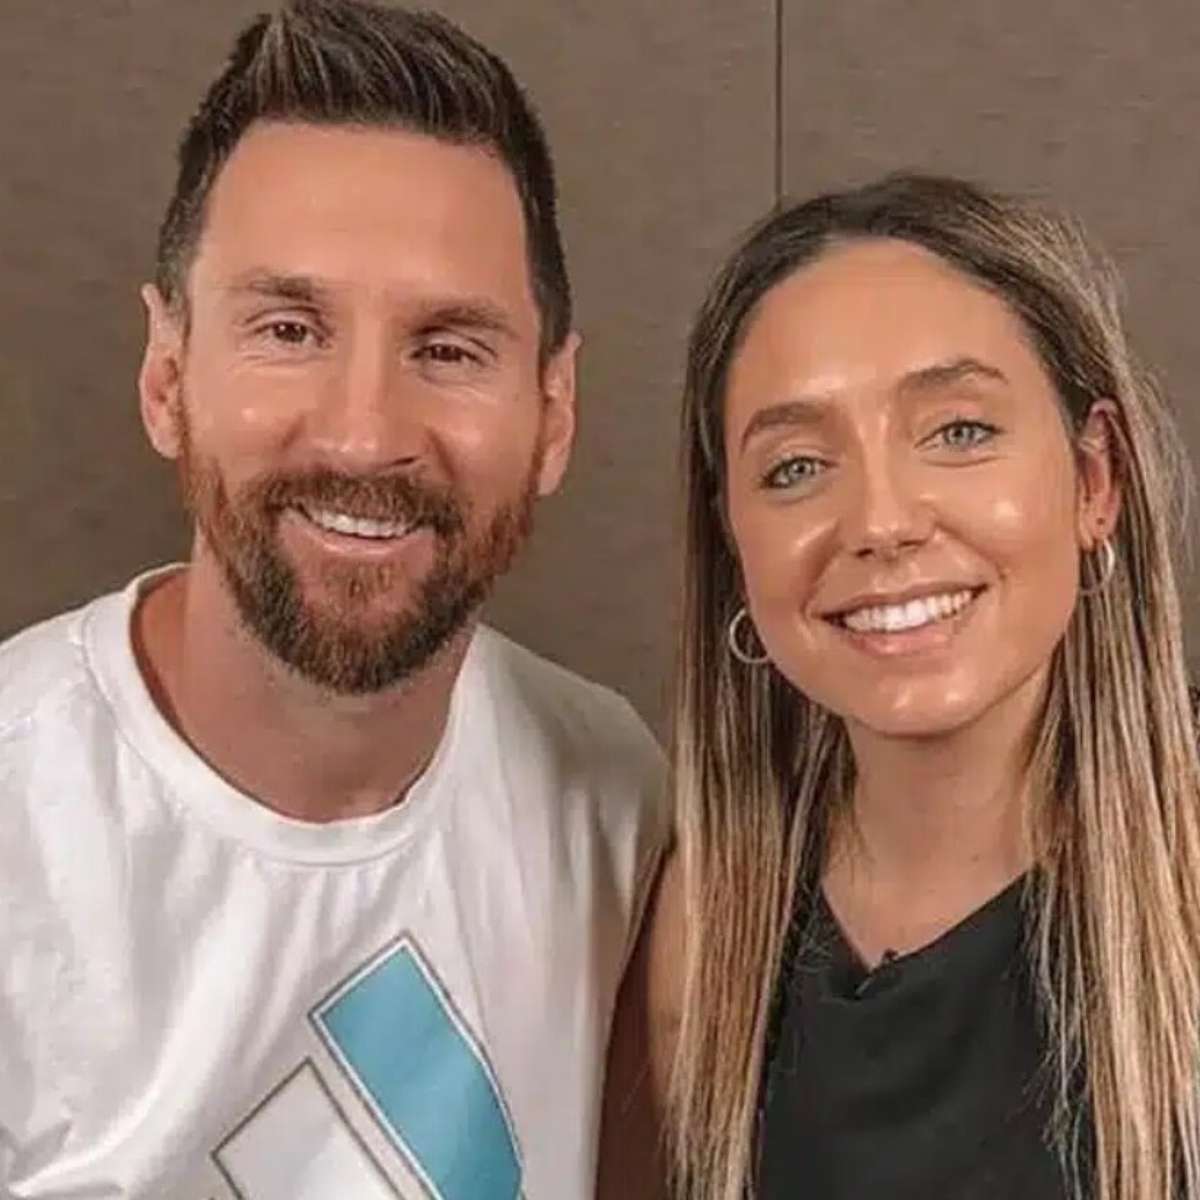 Sim o Messi é o melhor do mundo você querendo ou não